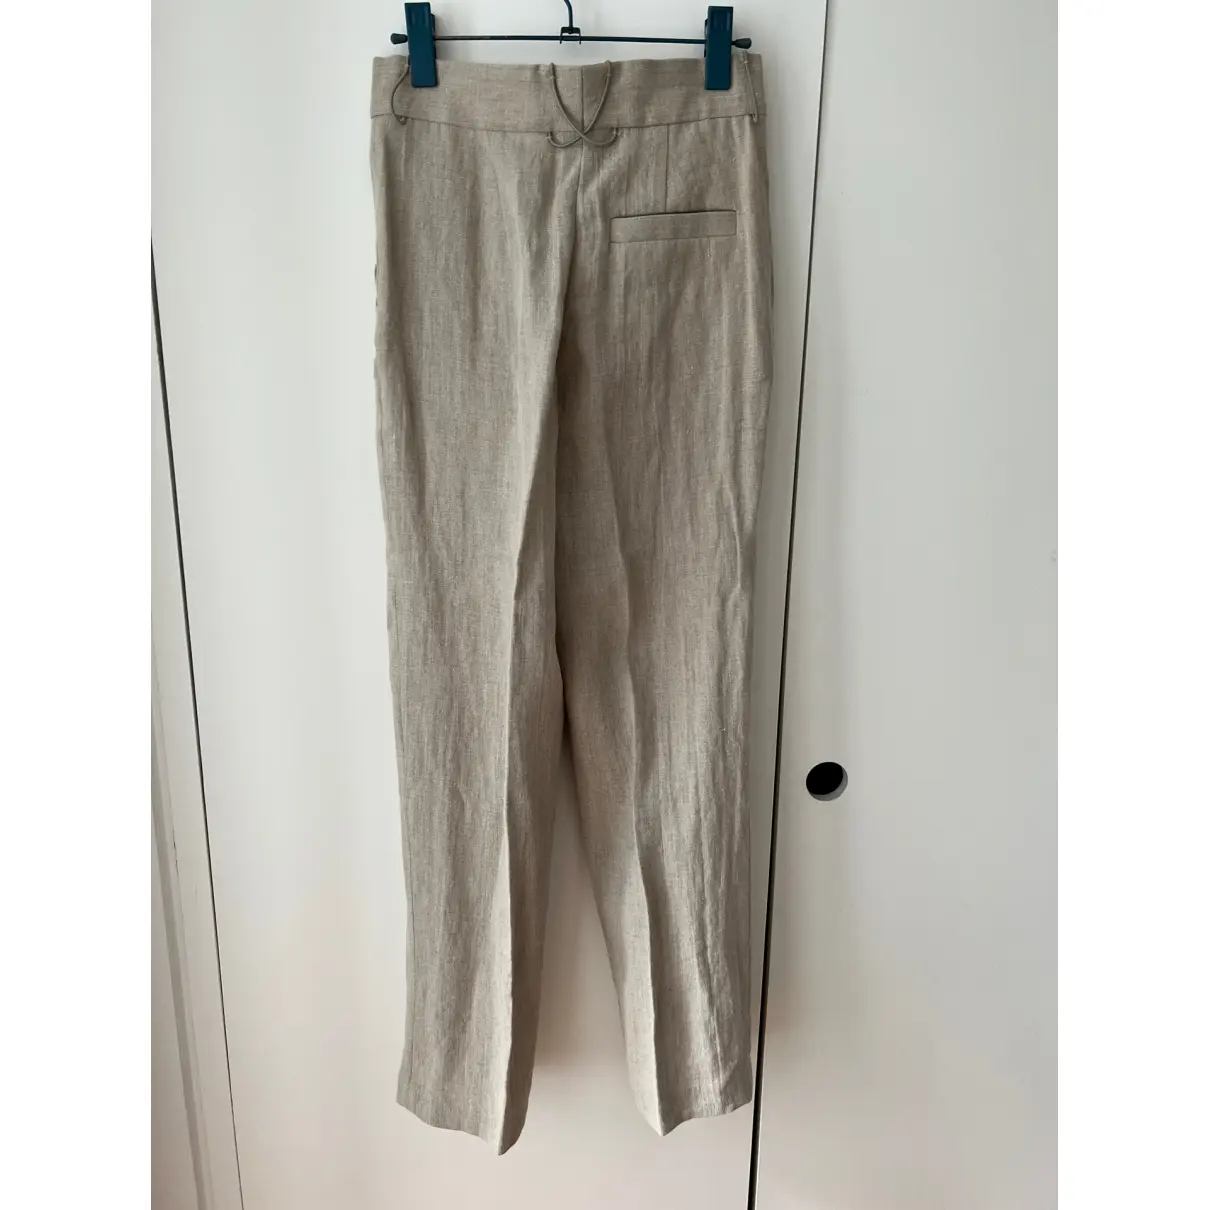 Buy Cos Linen trousers online